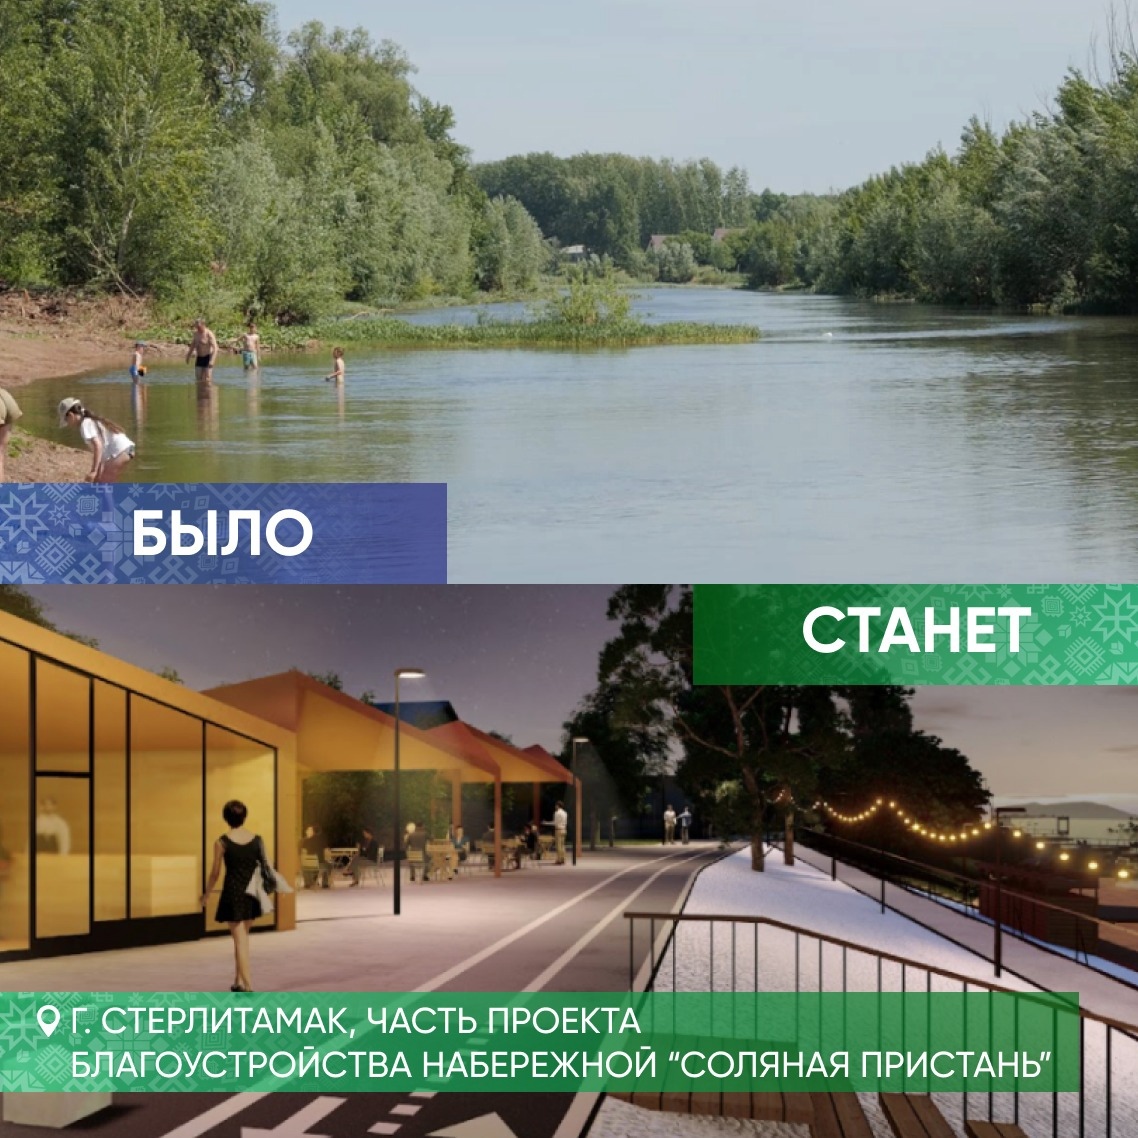 Победителями Всероссийского конкурса стали шесть башкирских городов